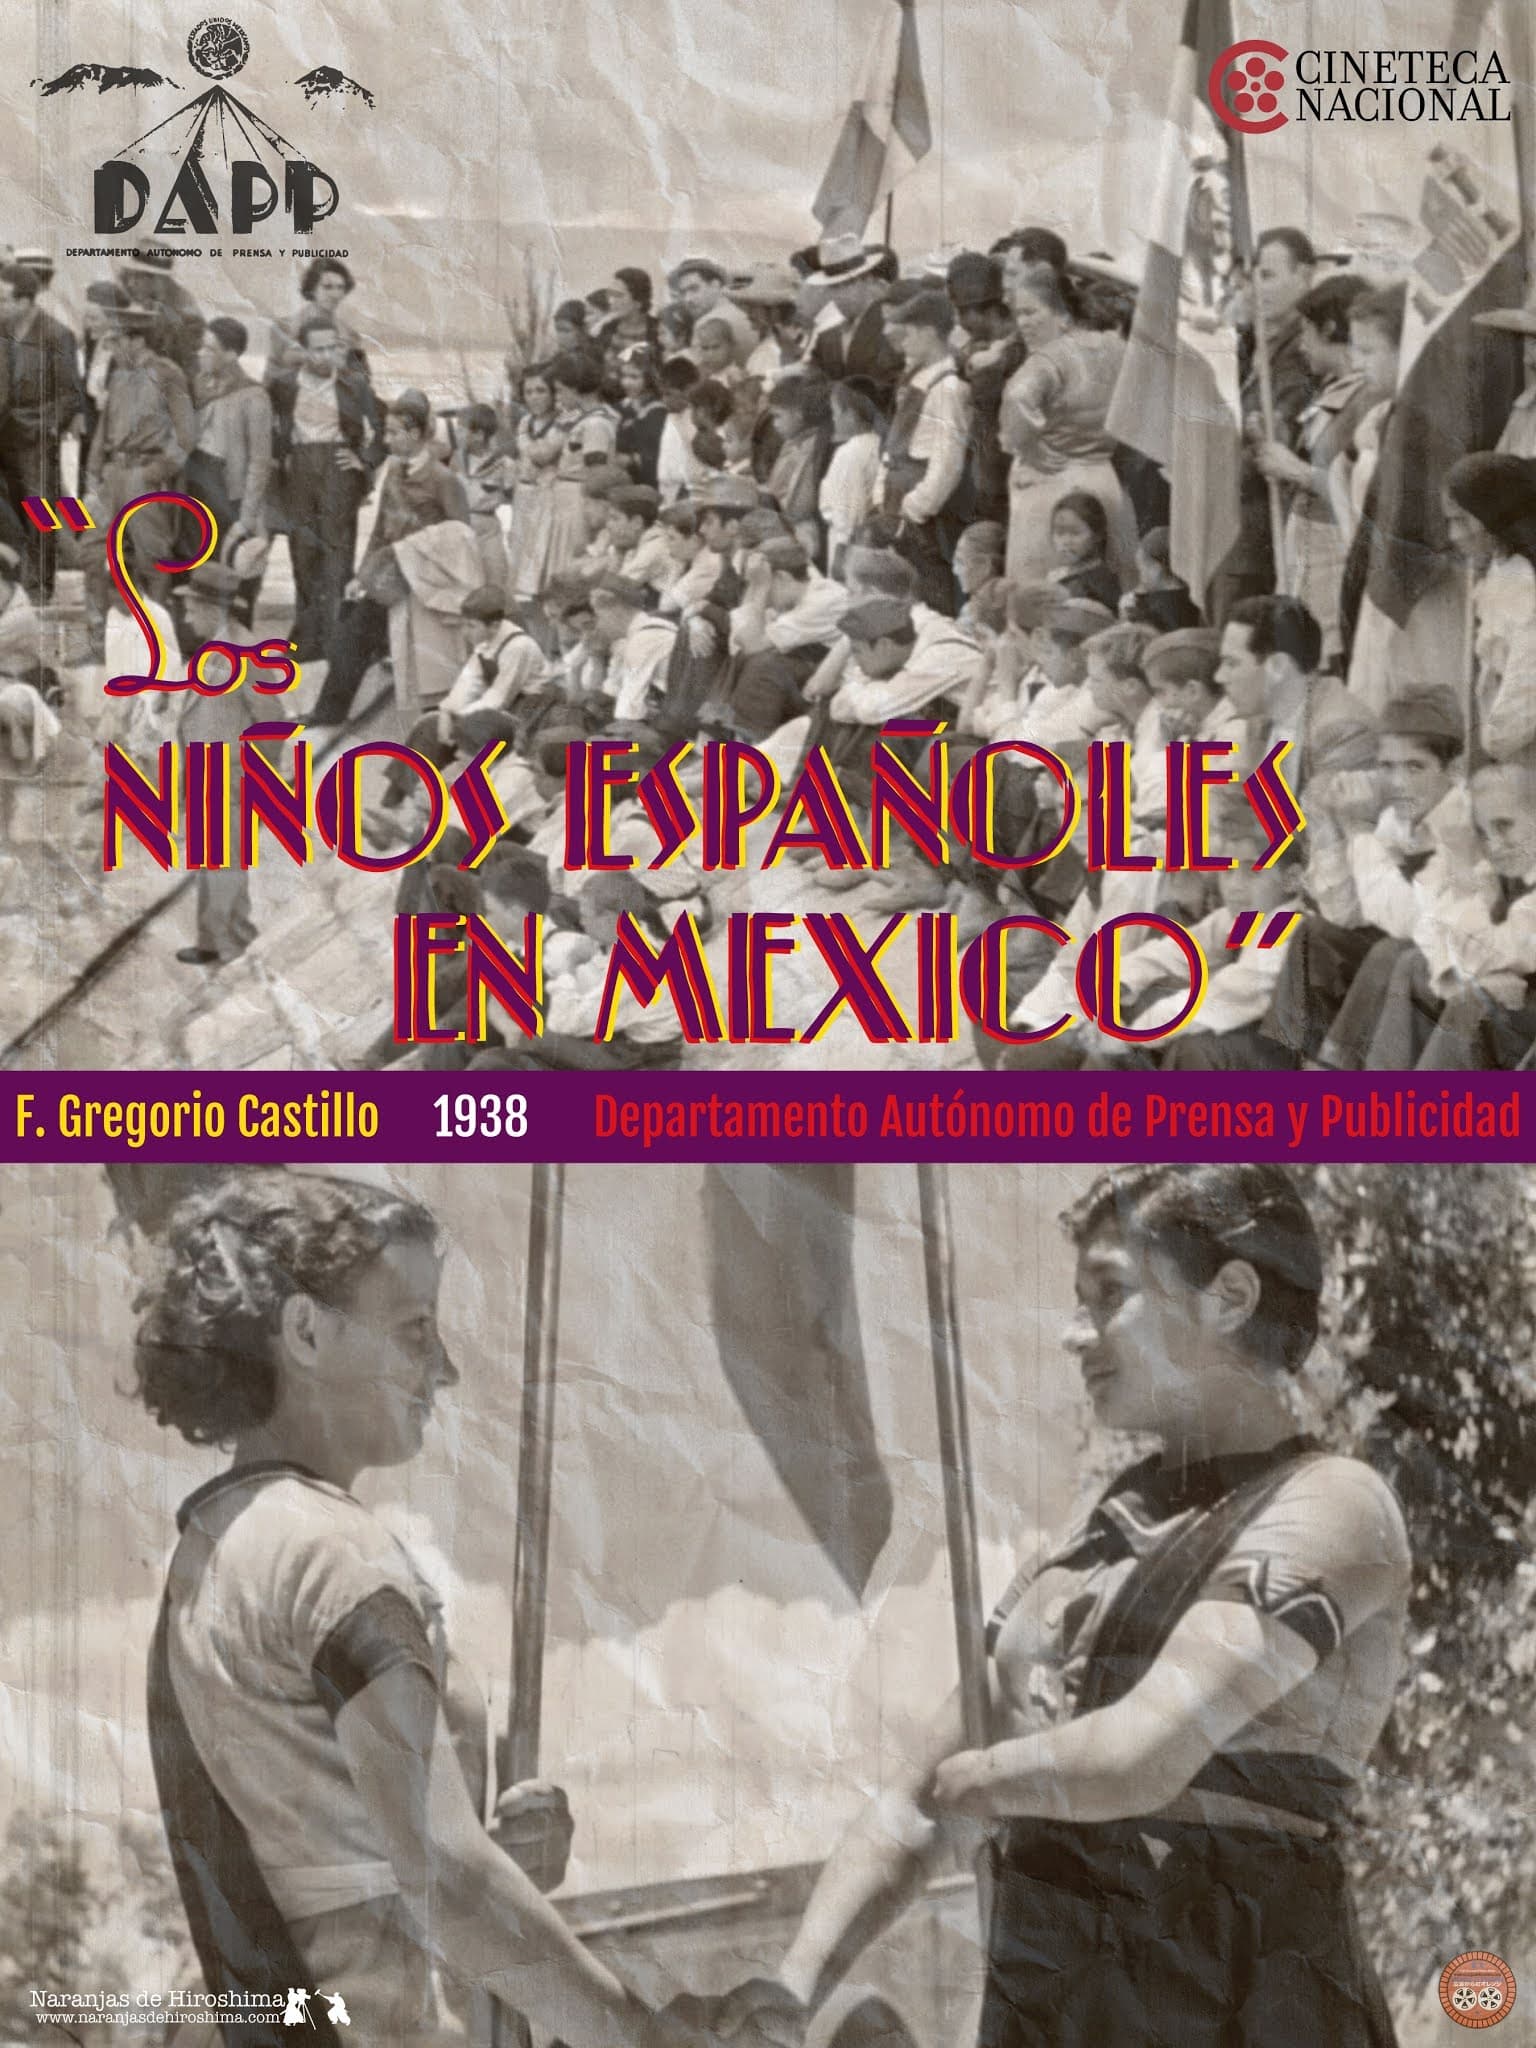 Los niños españoles en México